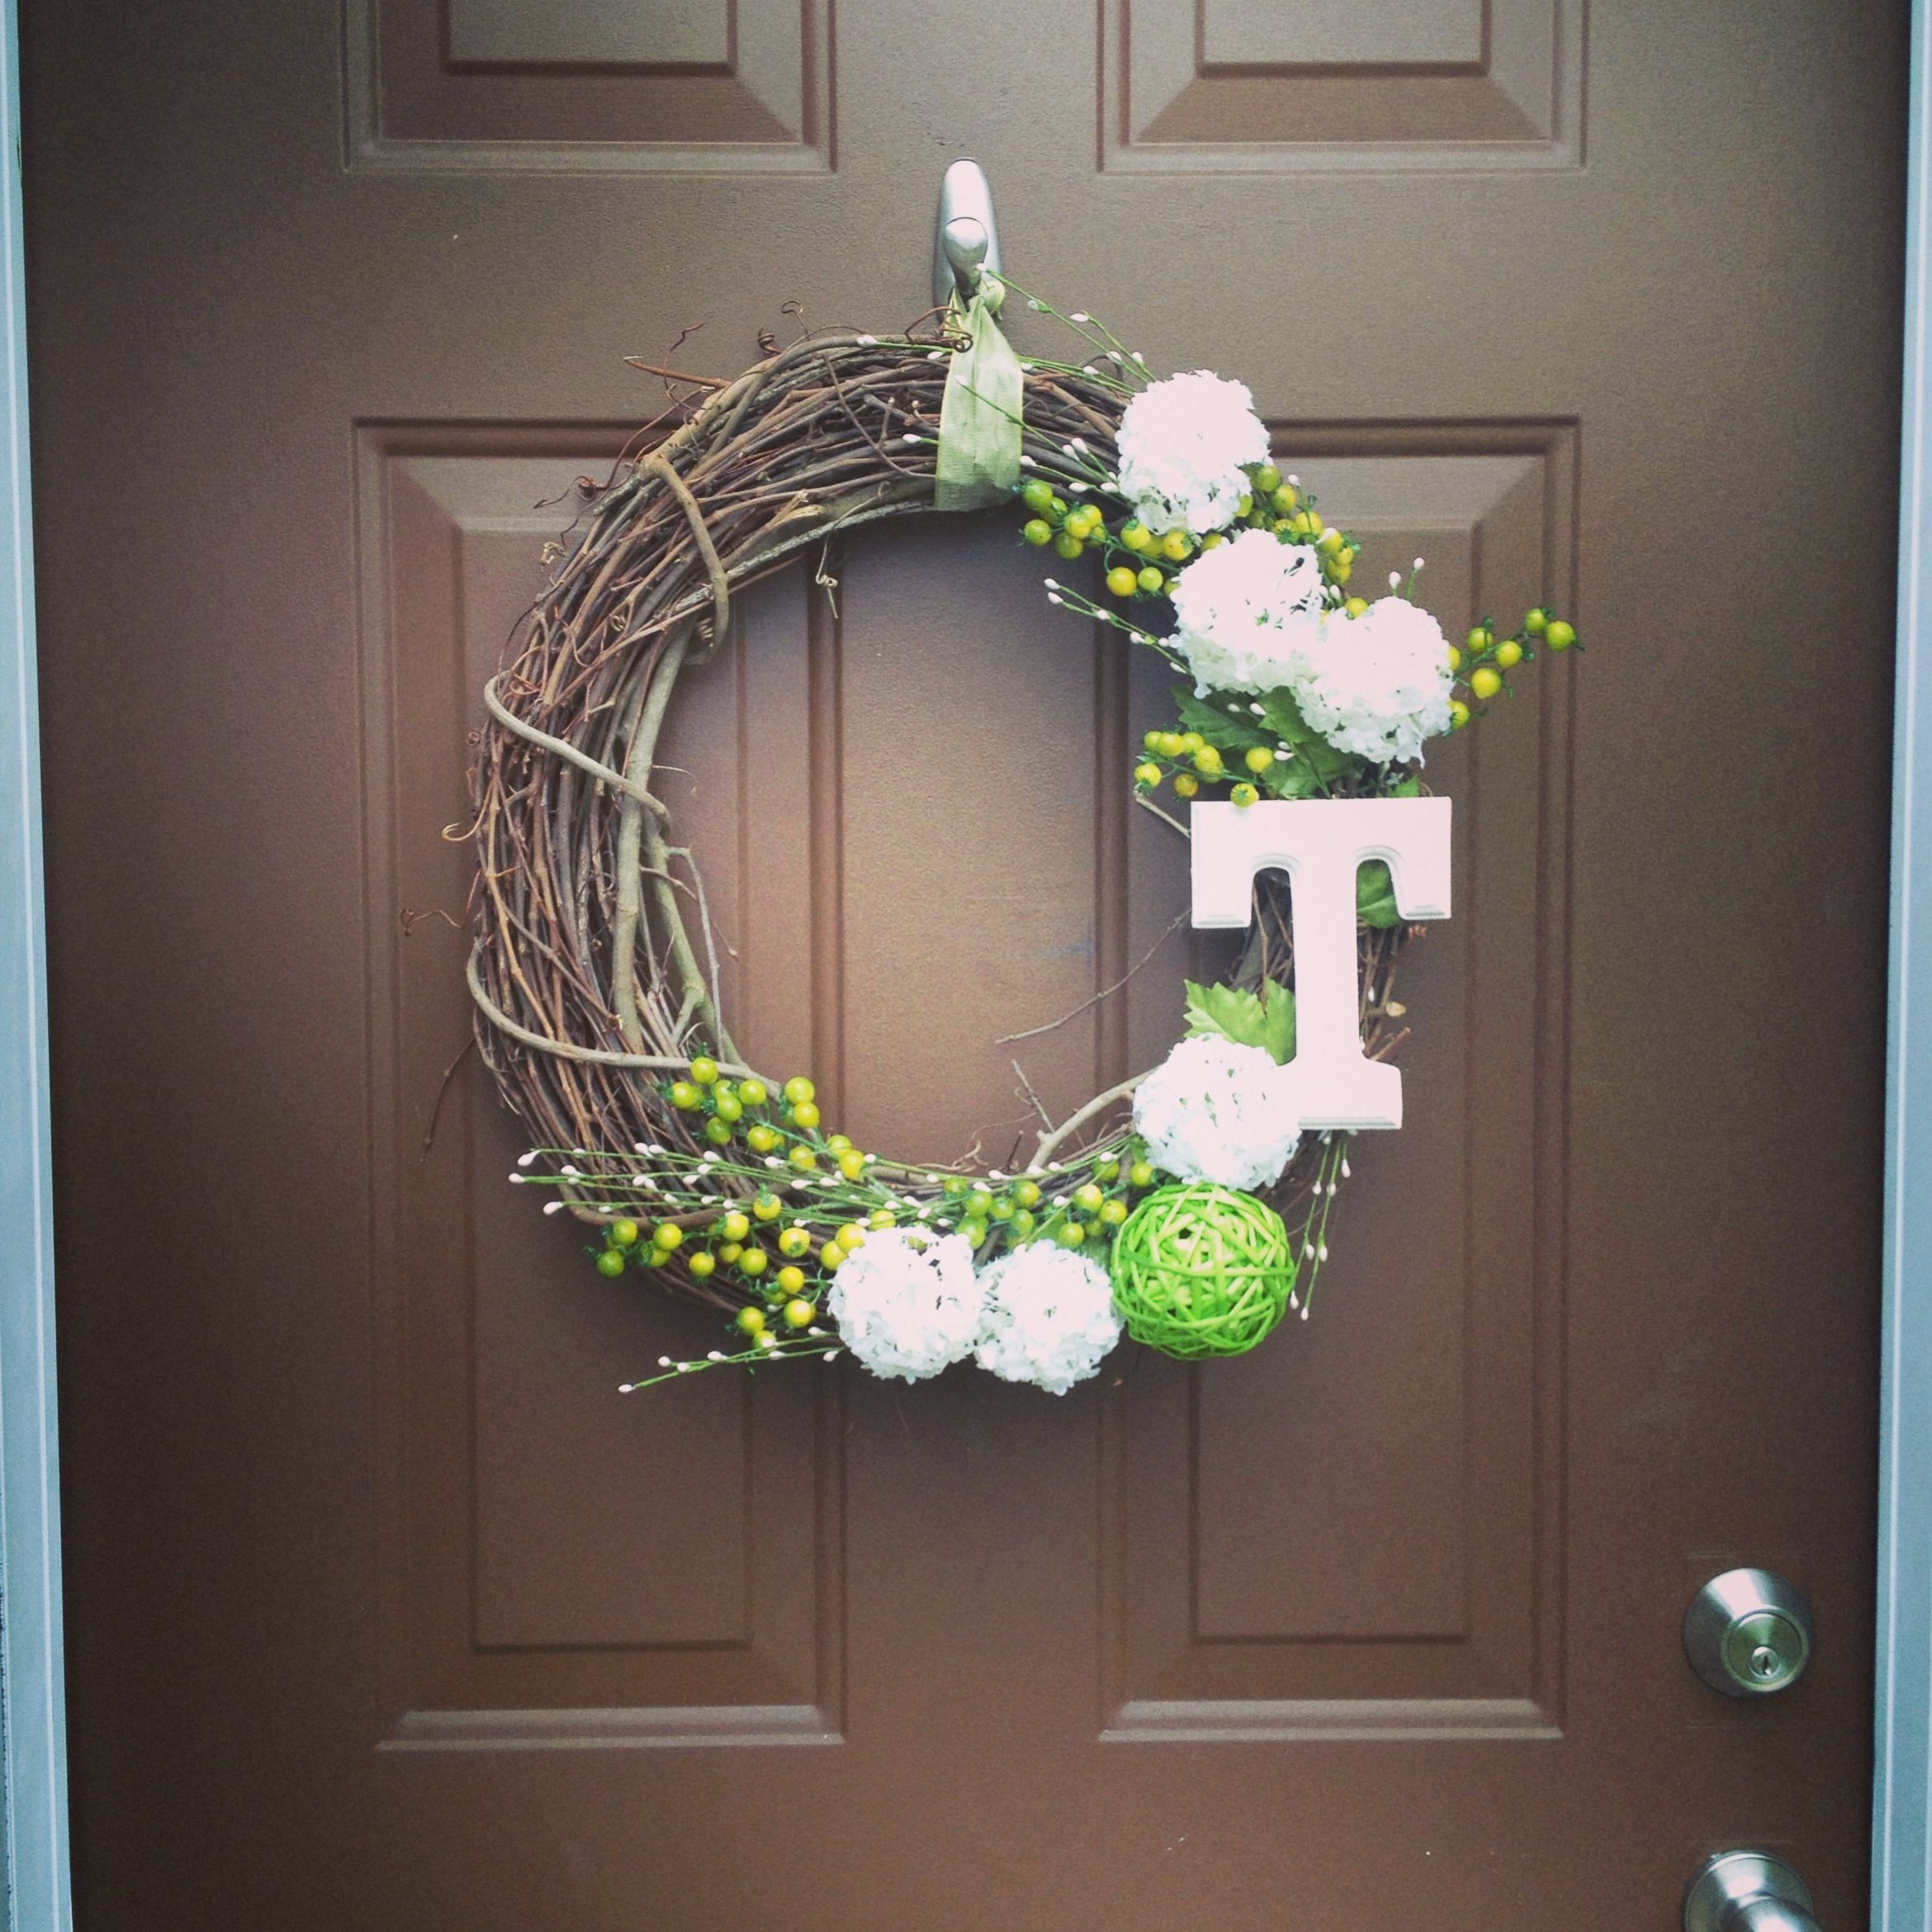 Best ideas about DIY Door Wreaths
. Save or Pin DIY monogram front door wreath Wreaths Now.